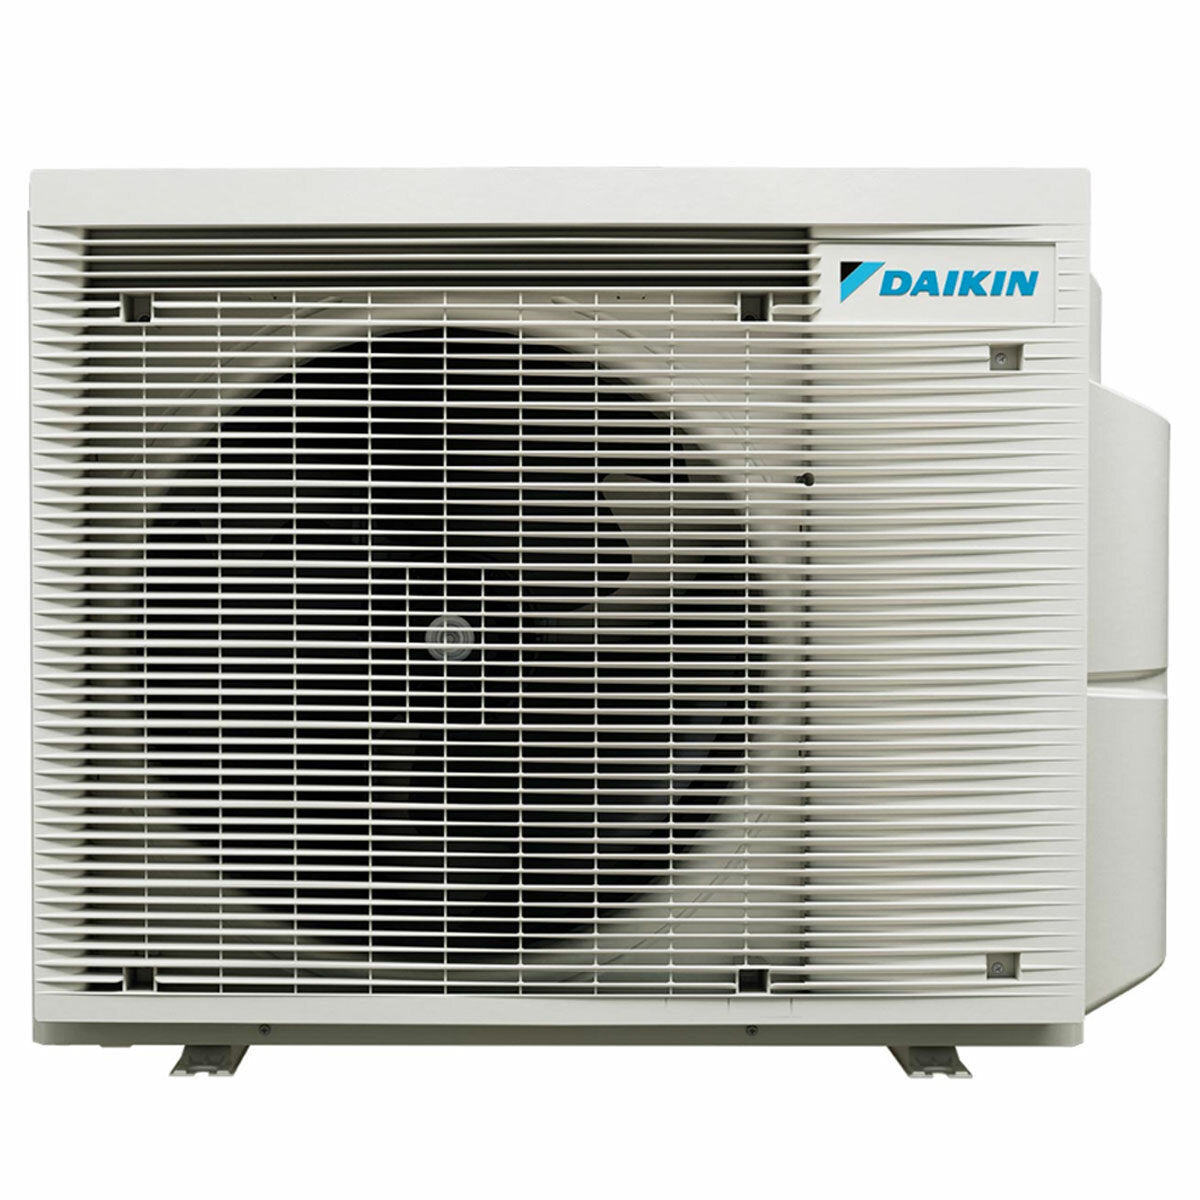 Daikin Emura 3 trial split air conditioner 7000+9000+15000 BTU inverter A+ wifi outdoor unit 6.8 kW Black